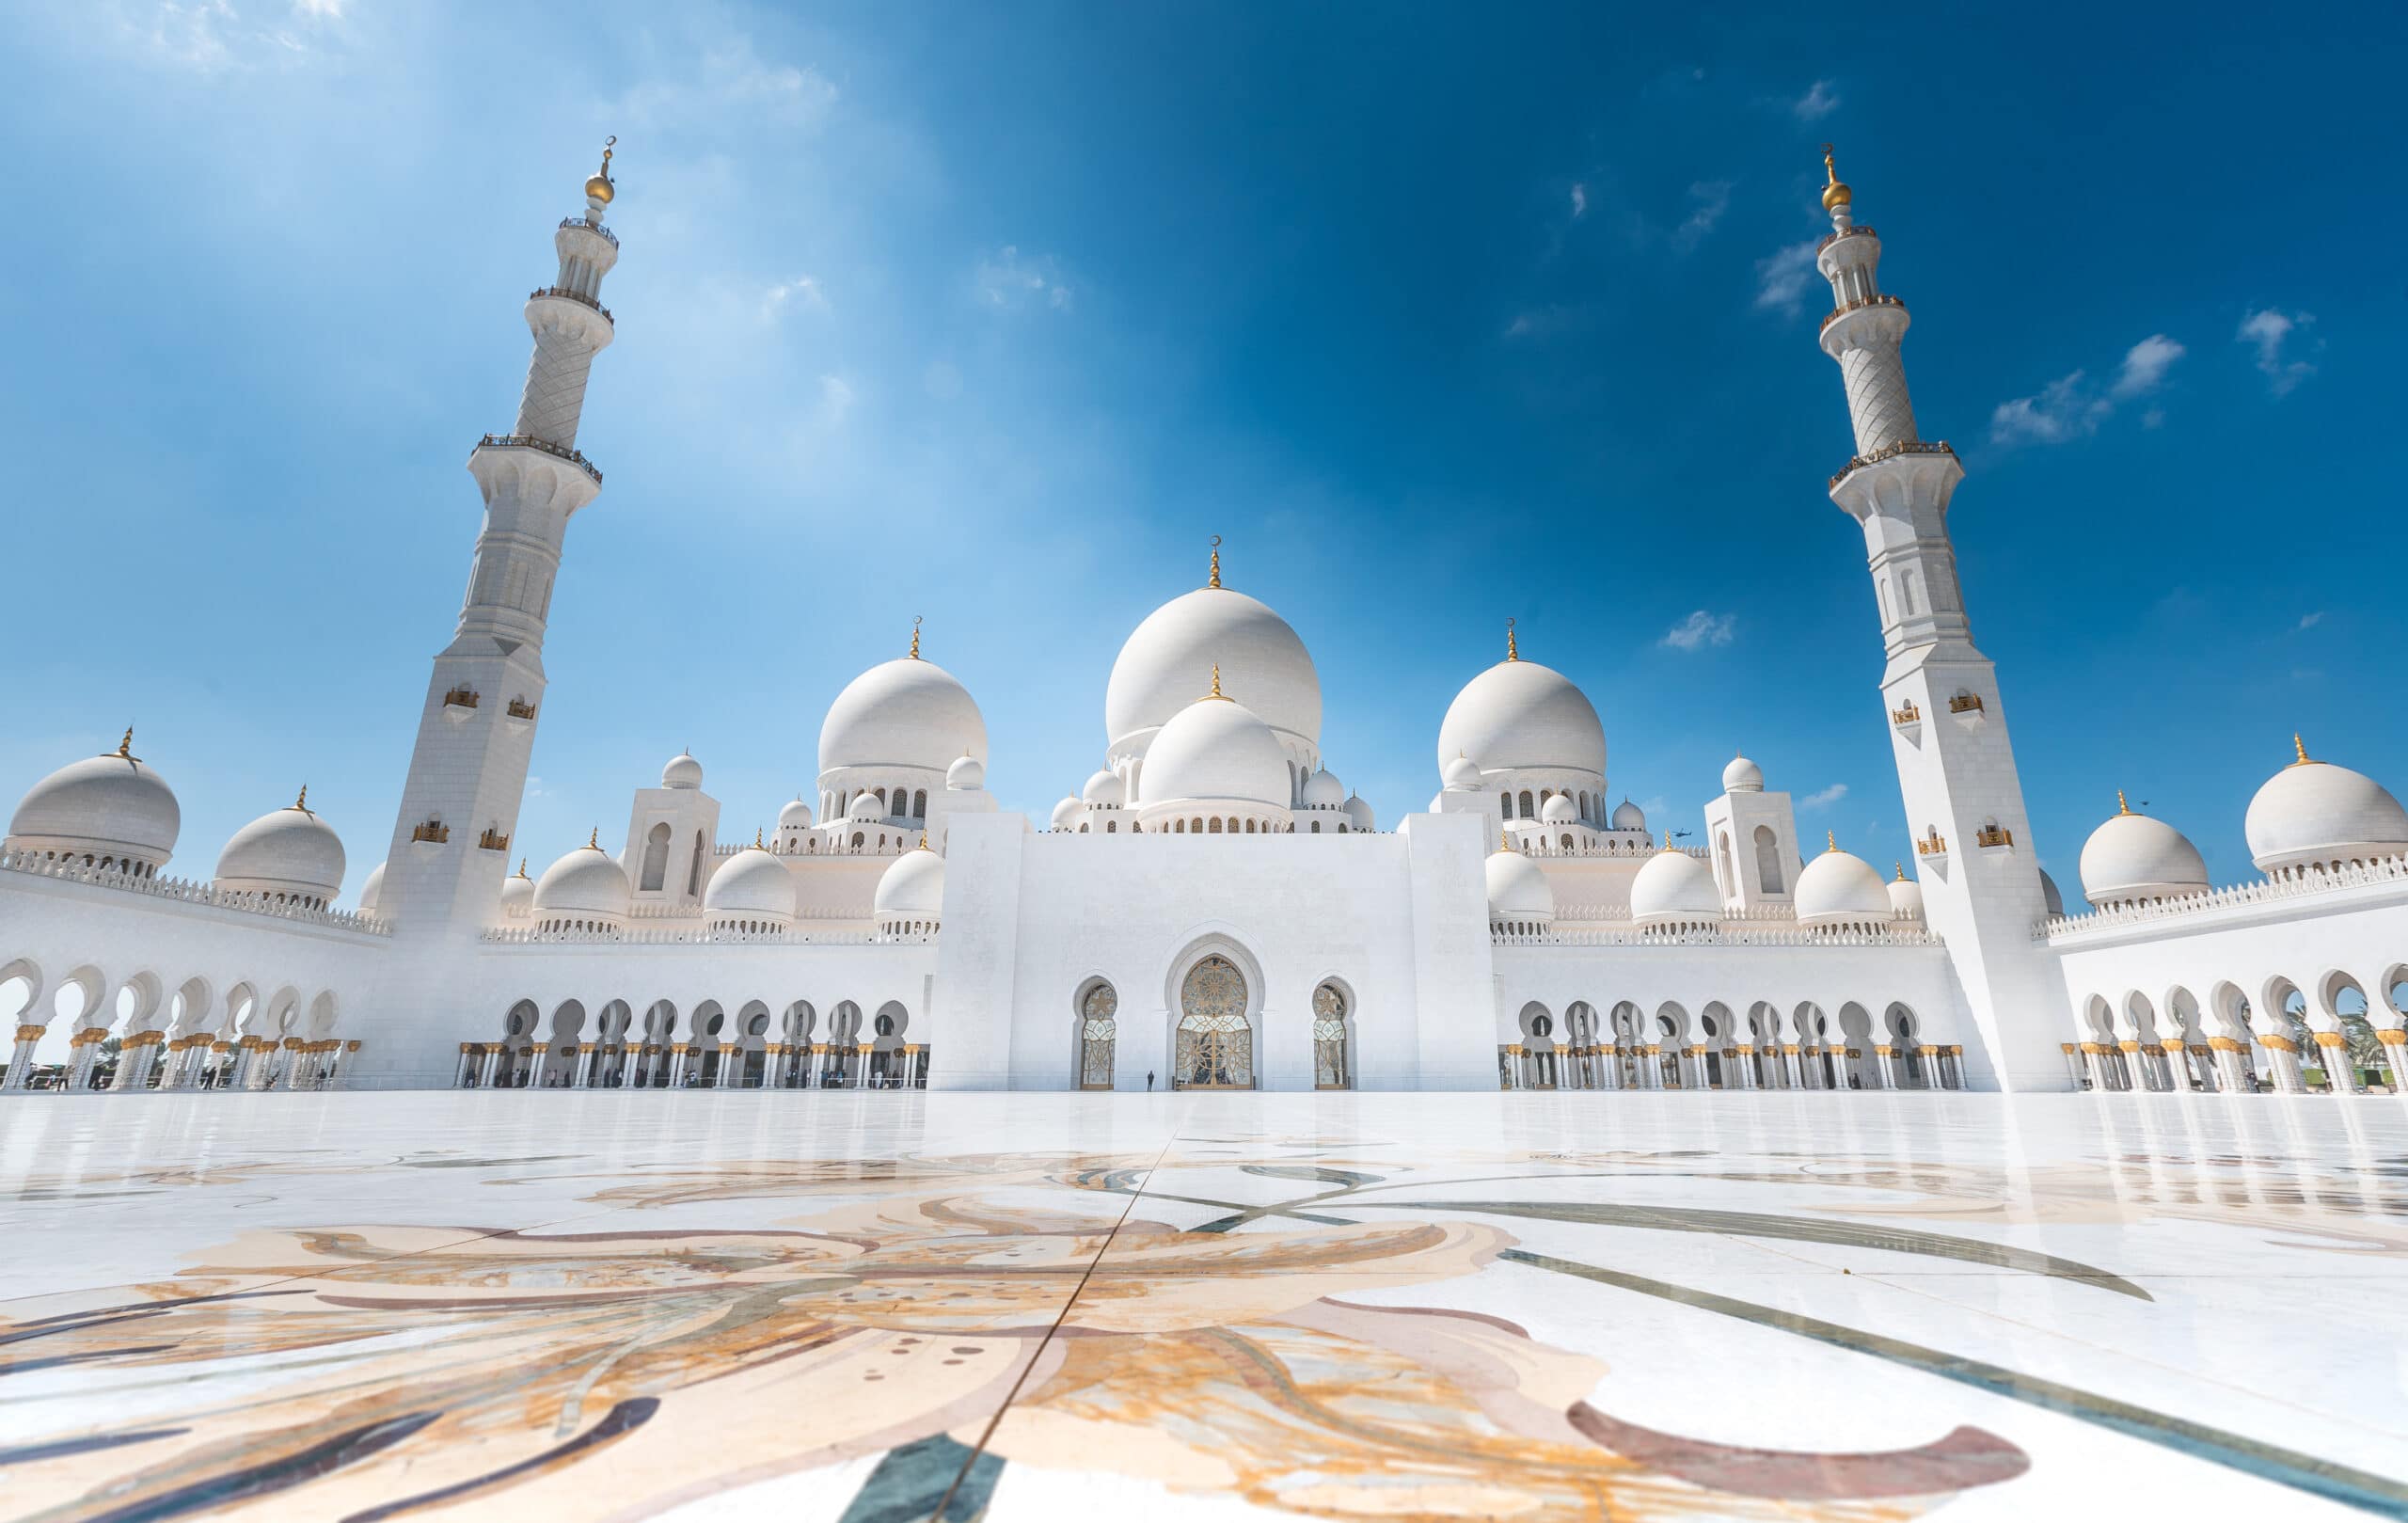 Verenigde-Arabische-Emiraten-Abu-Dhabi-cruise-haven-moskee